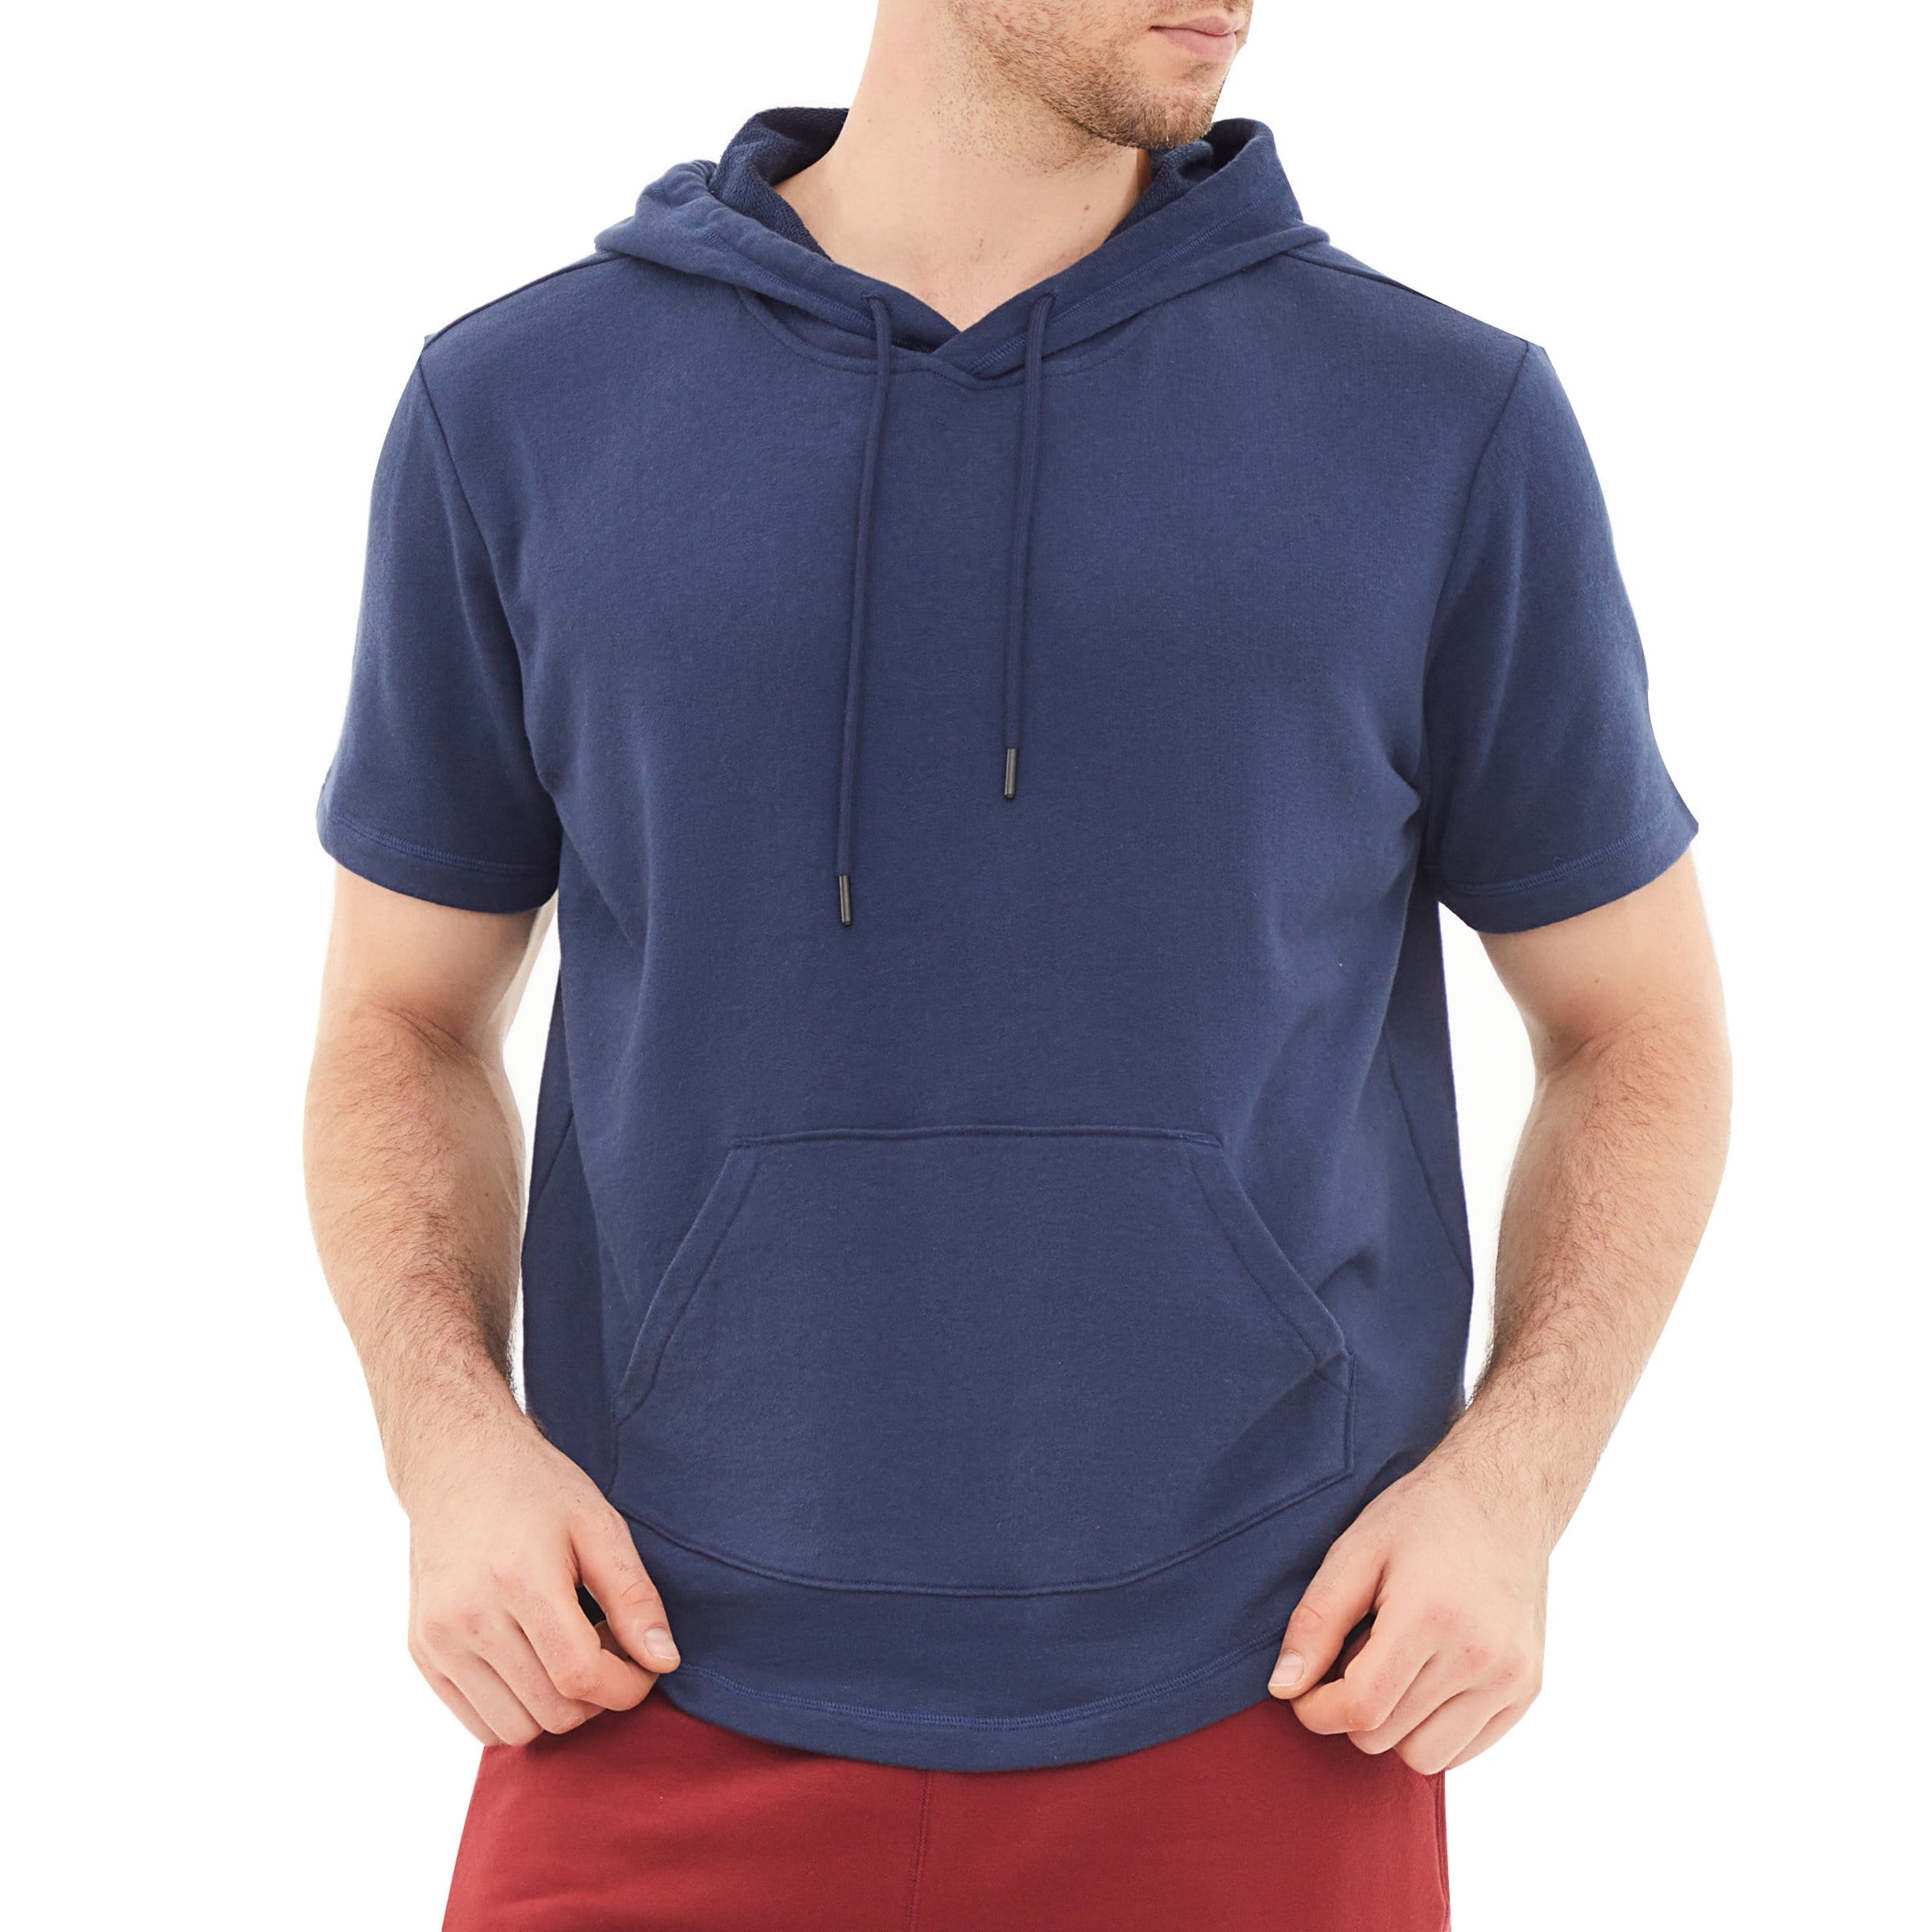 Men's Hoodies short-sleeved hooded sweatshirt #0602